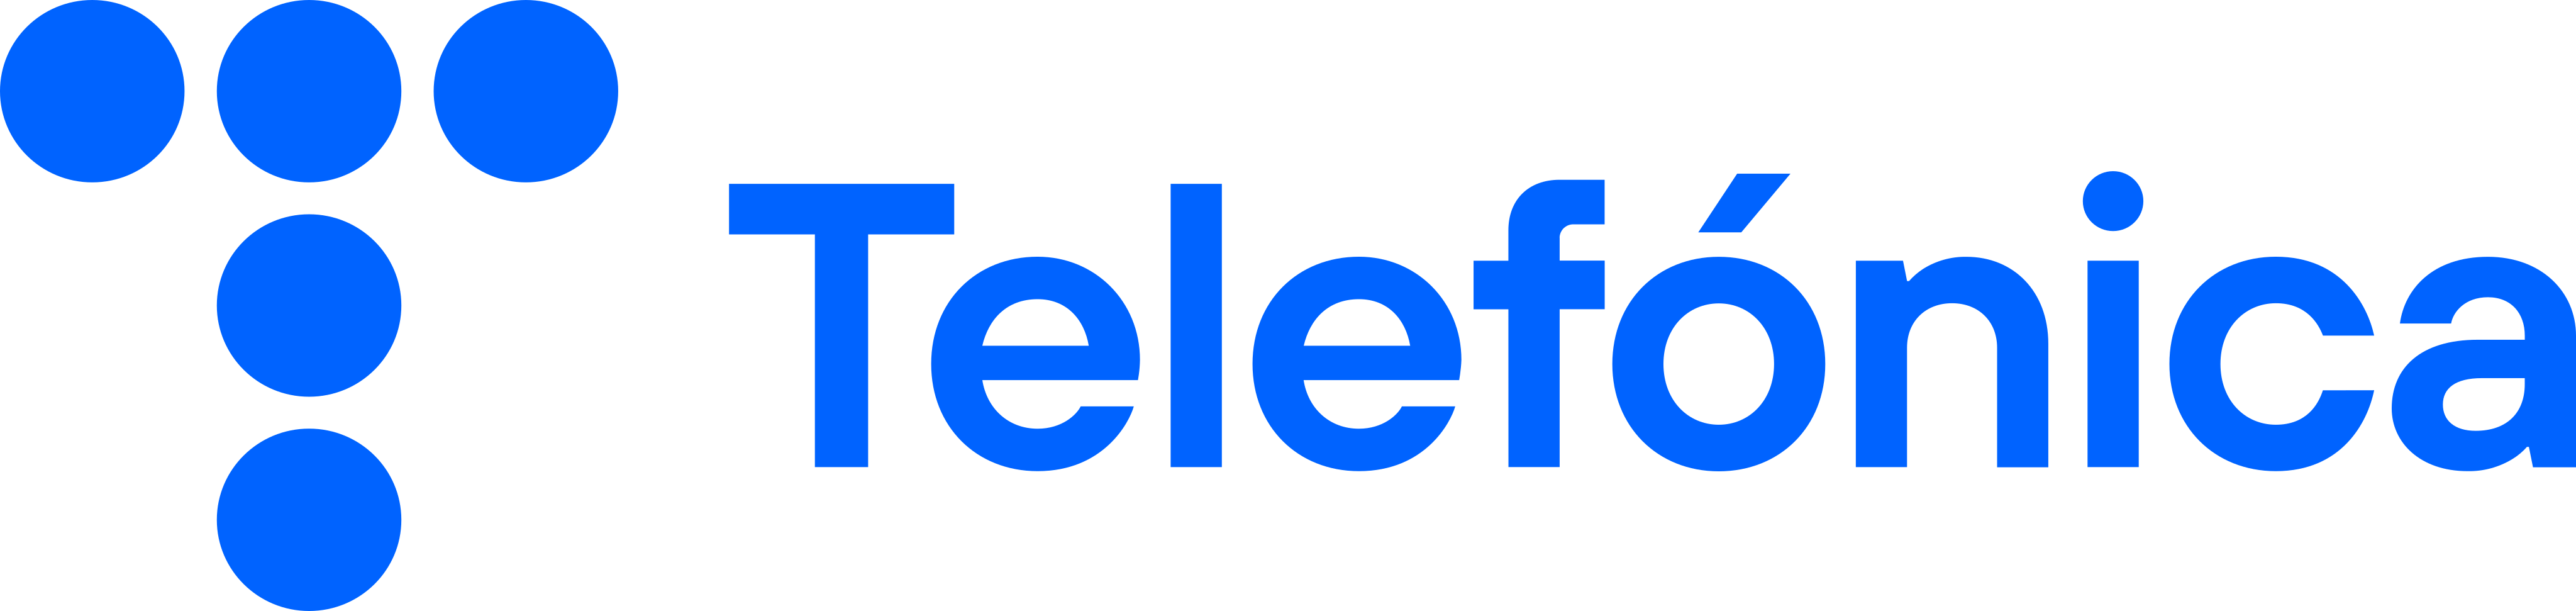 telefonica logo 5 - Telefónica Logo